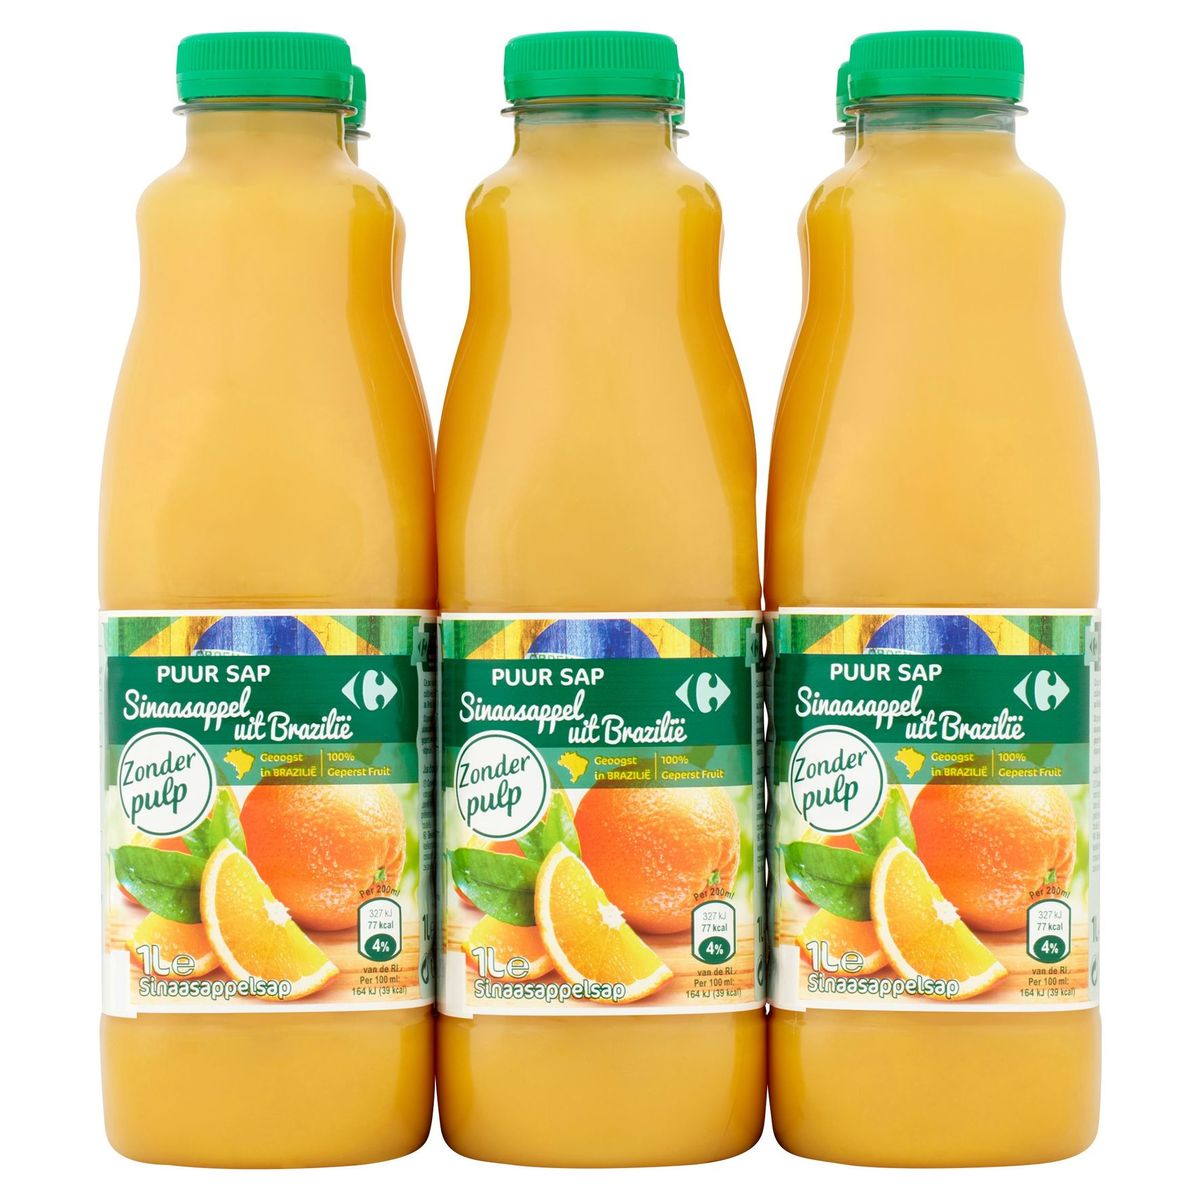 Carrefour Puur Sap Sinaasappel uit Brazilië zonder Pulp 6 x 1 L